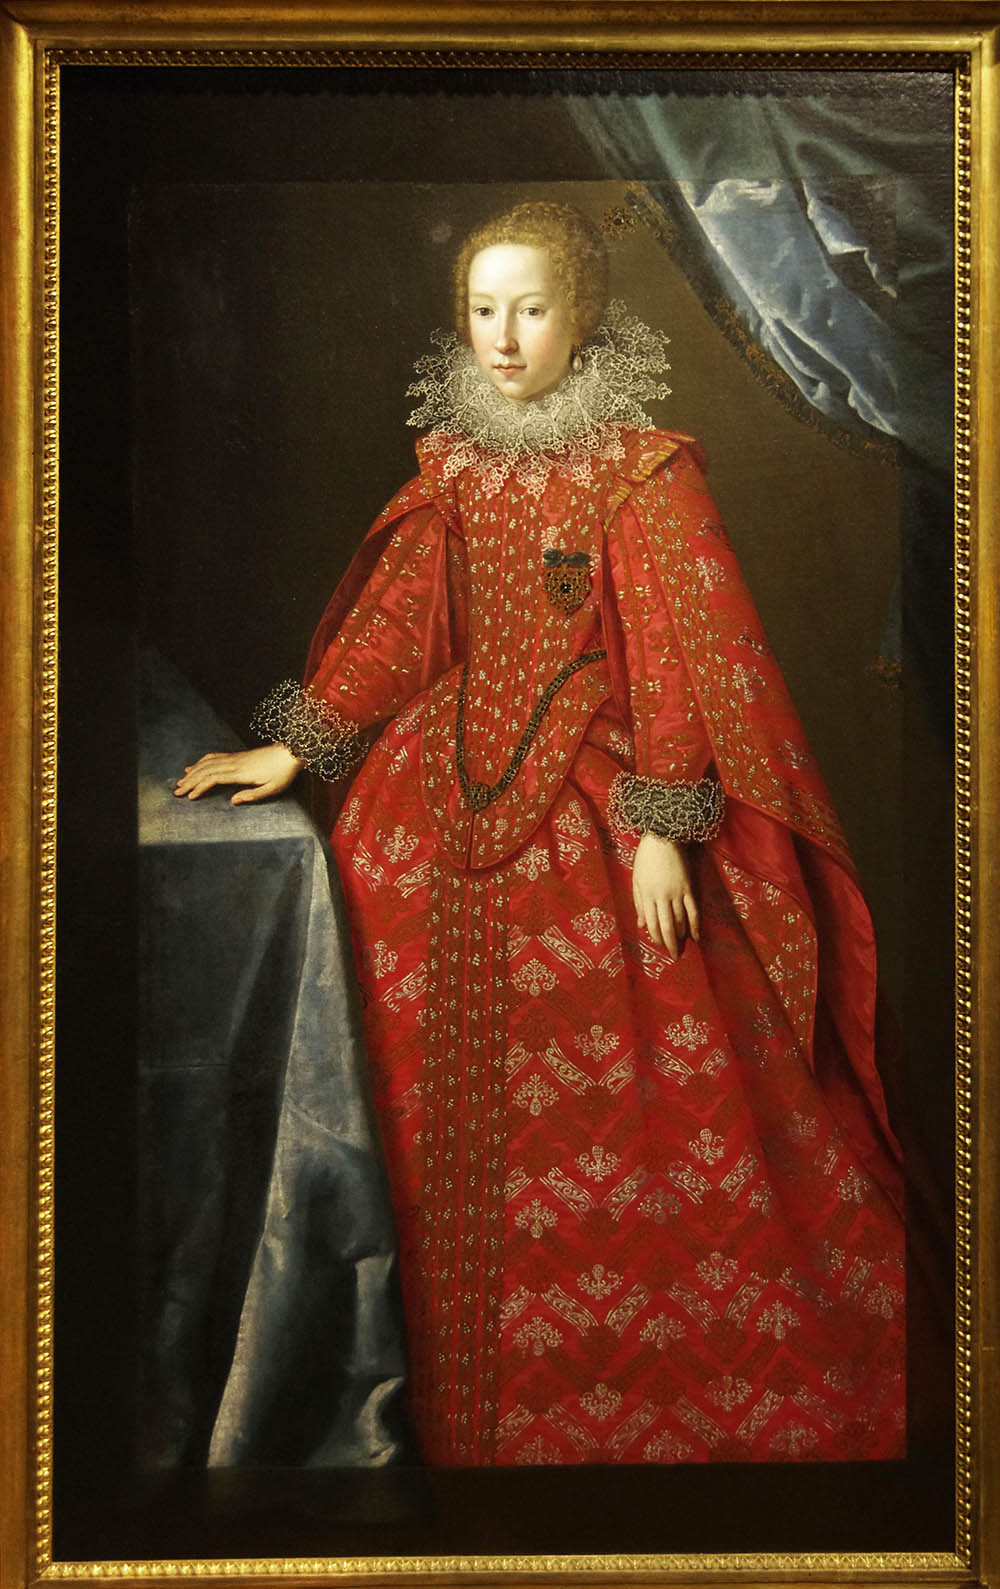 16至18世纪欧洲油画展:伦勃朗的时代